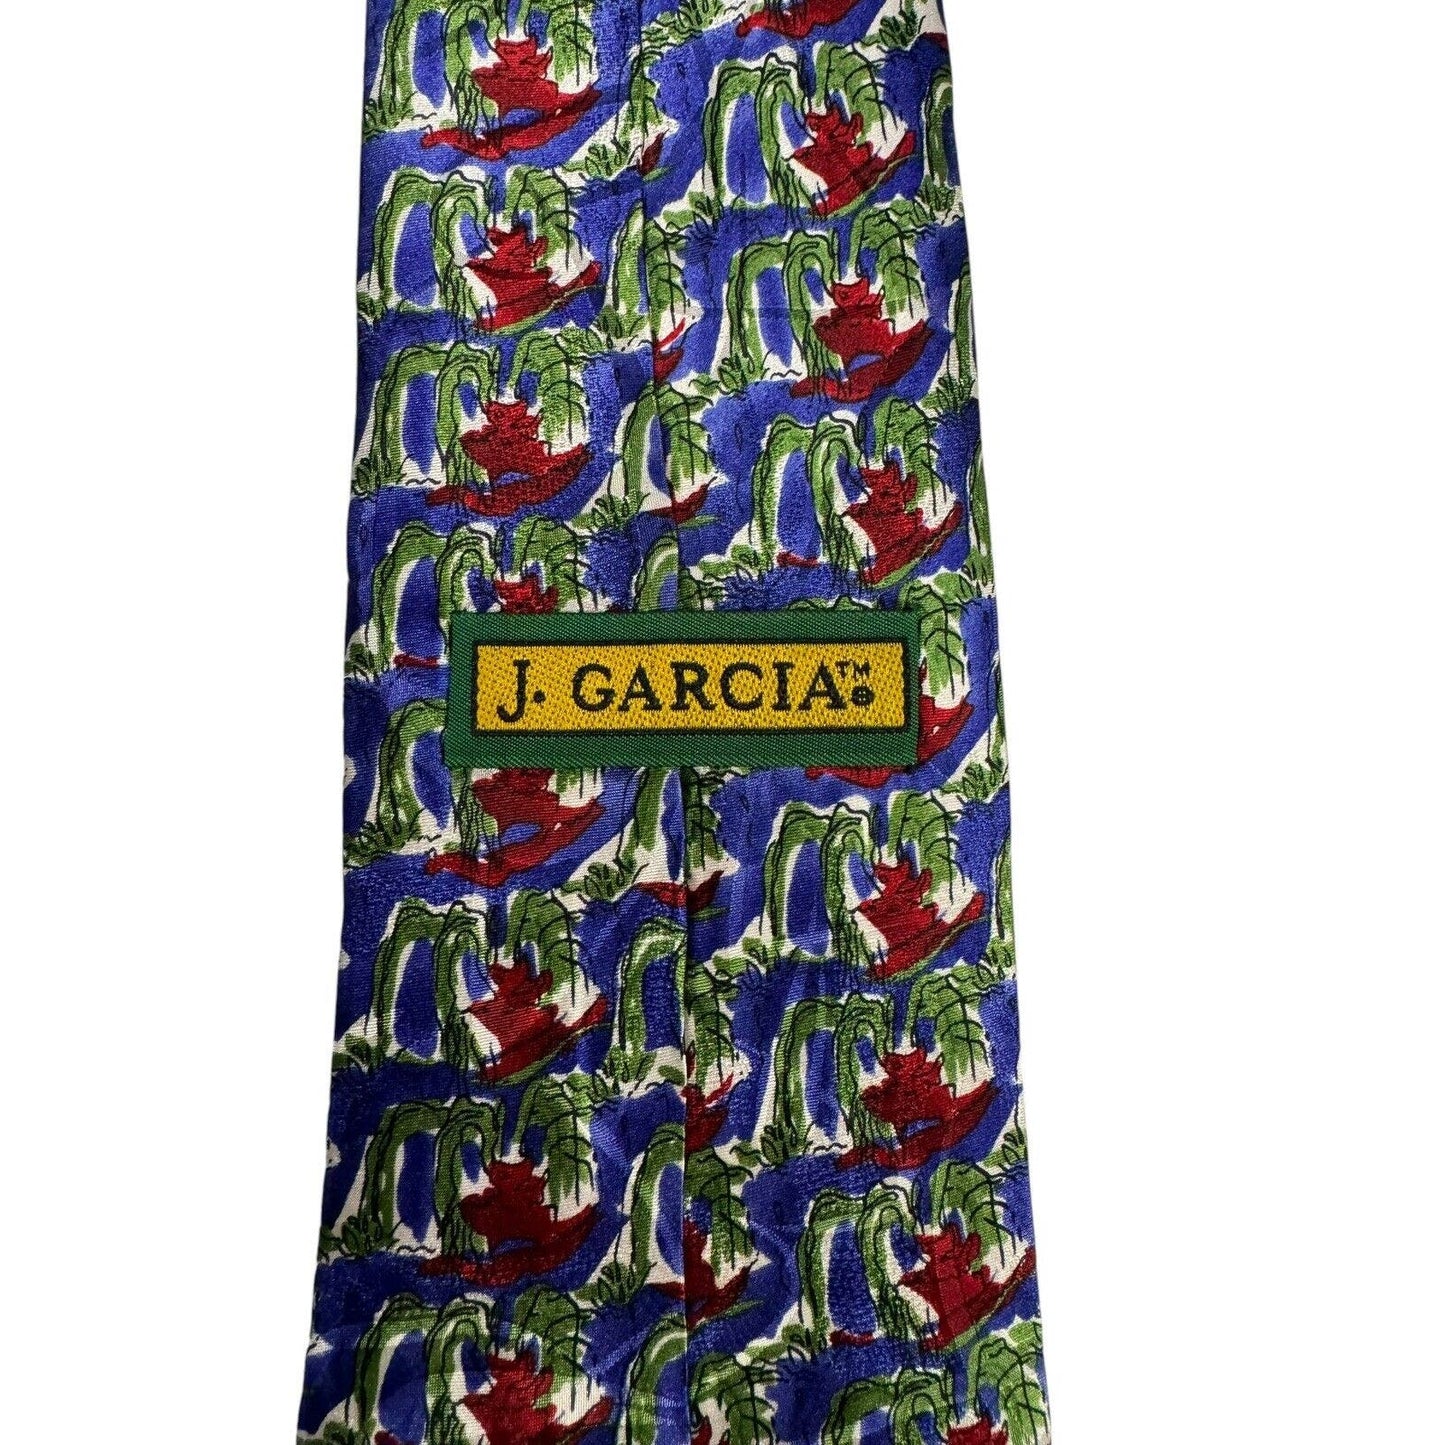 J Garcia In The Park Vintage Novelty Necktie 100% Silk